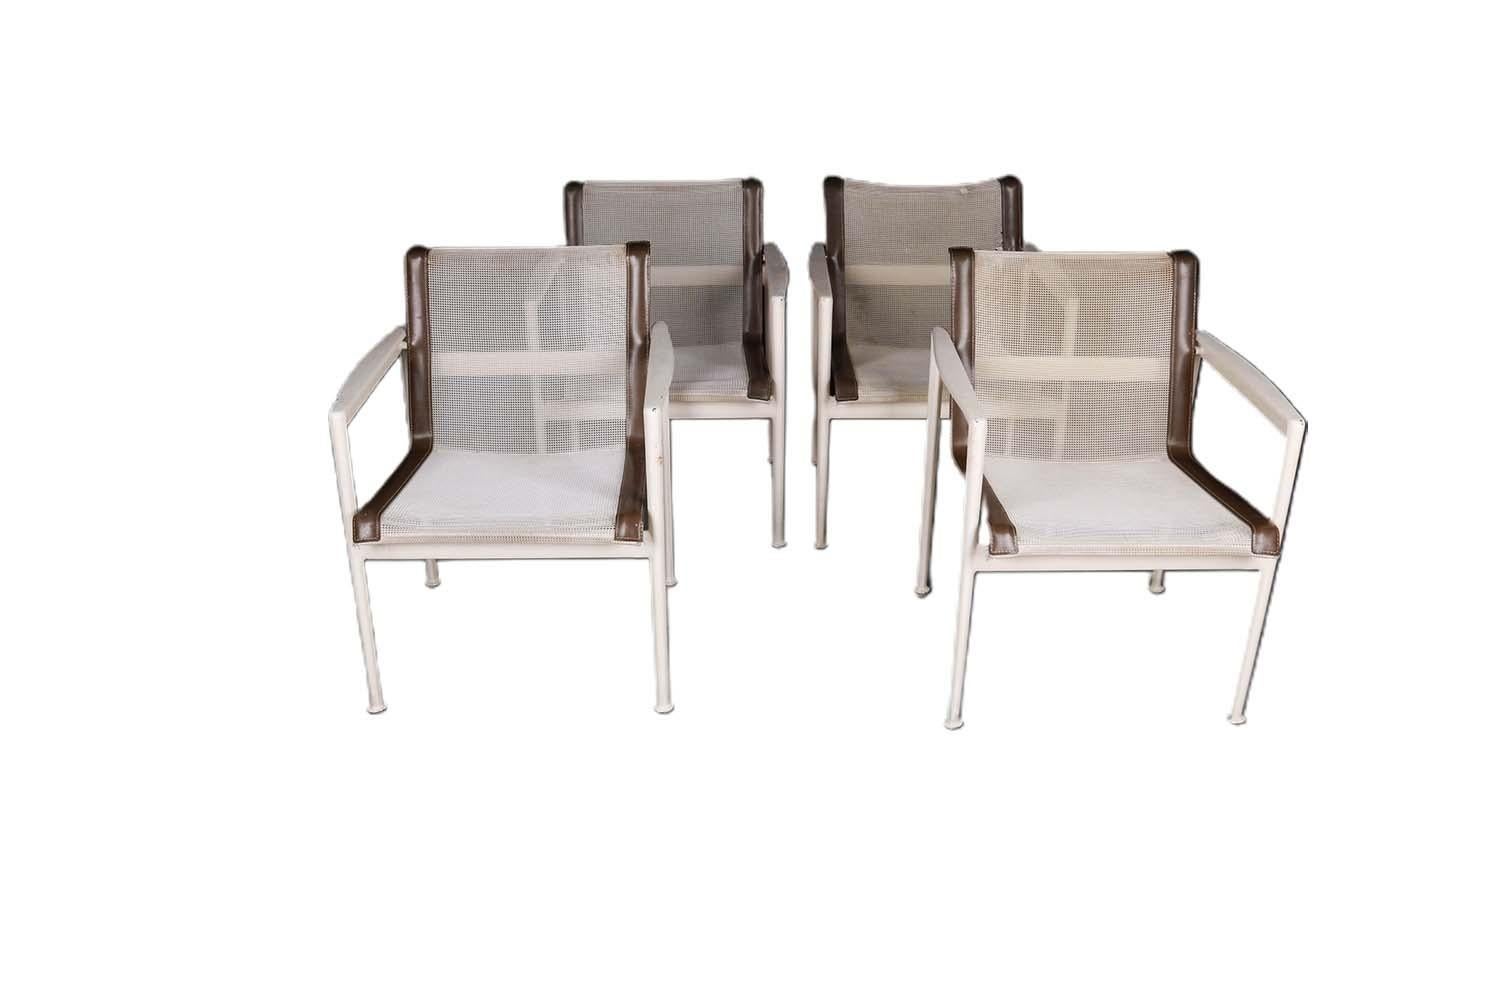 Ensemble de quatre fauteuils de salon de patio du célèbre designer Richard Schultz pour Florence Knoll, fabriqués aux États-Unis, vers les années 1960. Superbement fabriquée, chacune d'entre elles est dotée d'un cadre en aluminium peint en blanc et